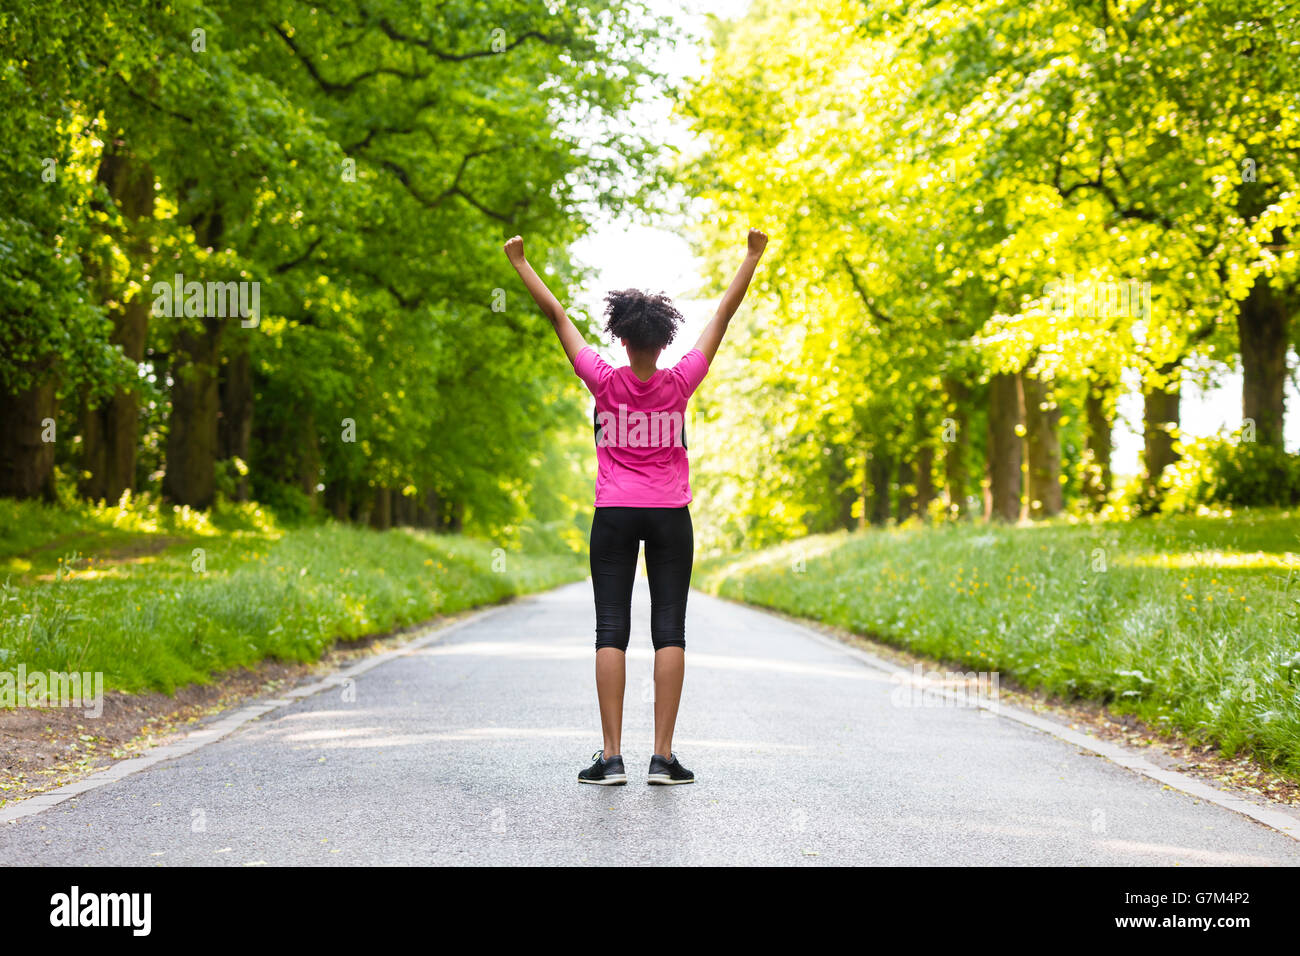 Razza mista americano africano donna giovane ragazza adolescente fitness jogging in esecuzione per celebrare il successo sulla strada fiancheggiata con alberi verdi Foto Stock